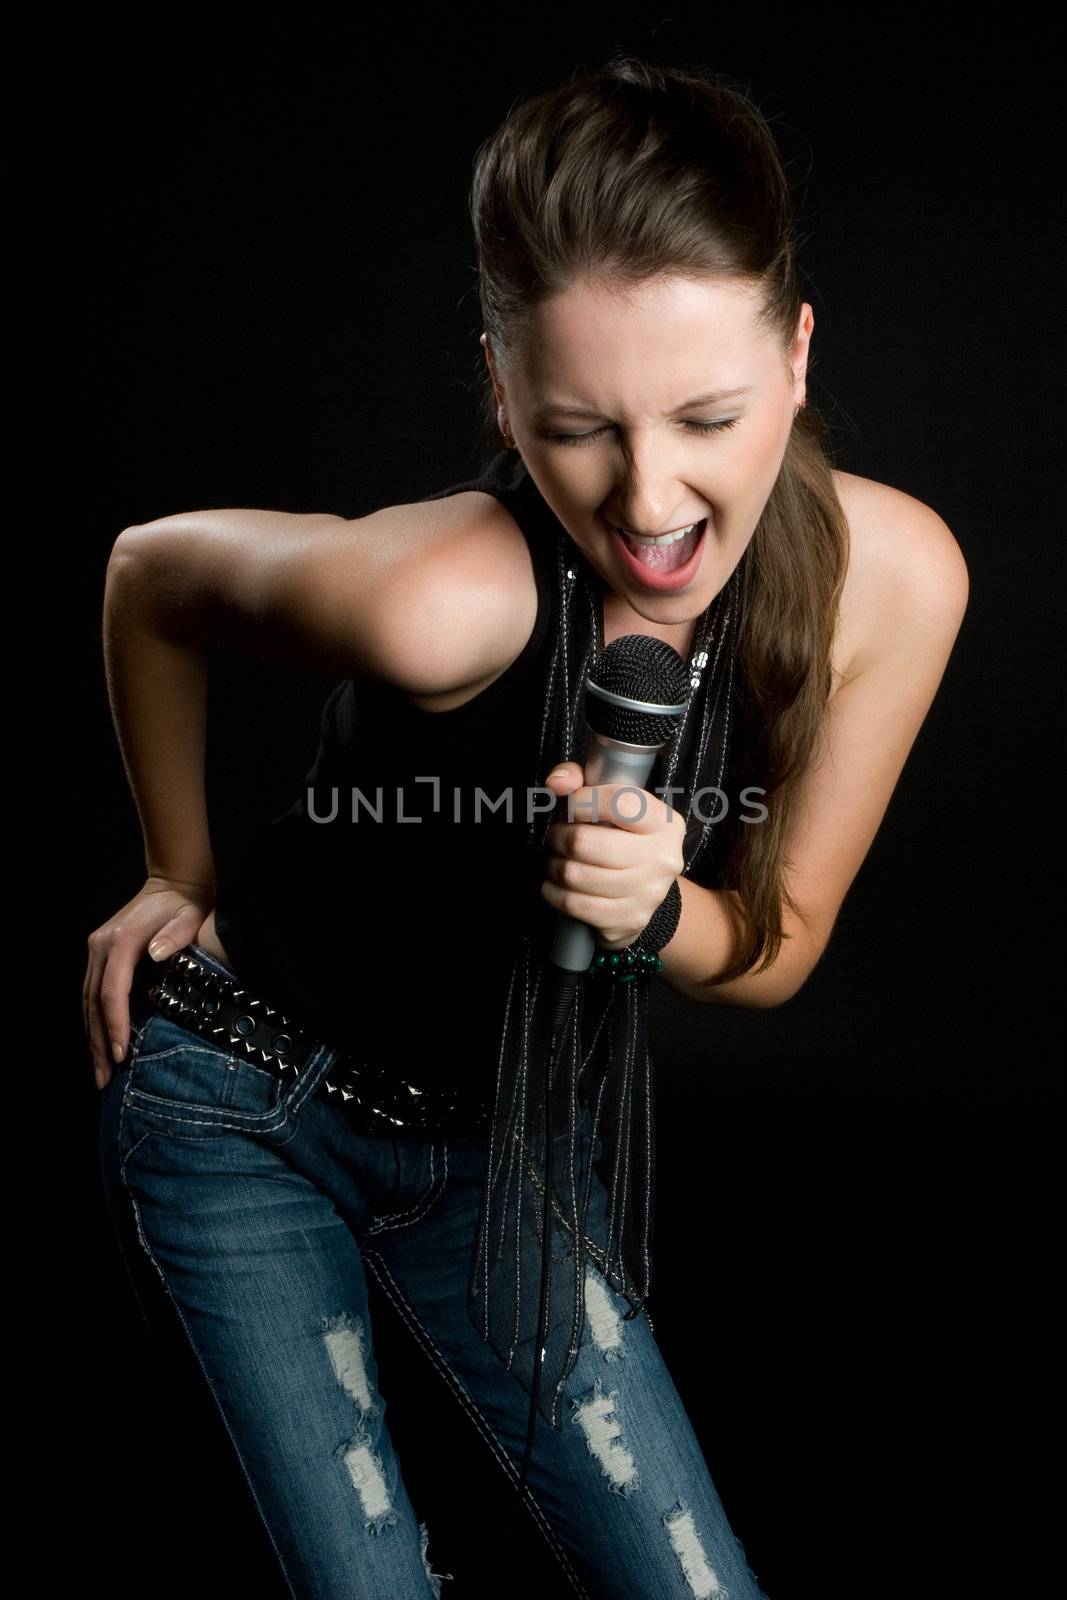 Karaoke Woman by keeweeboy